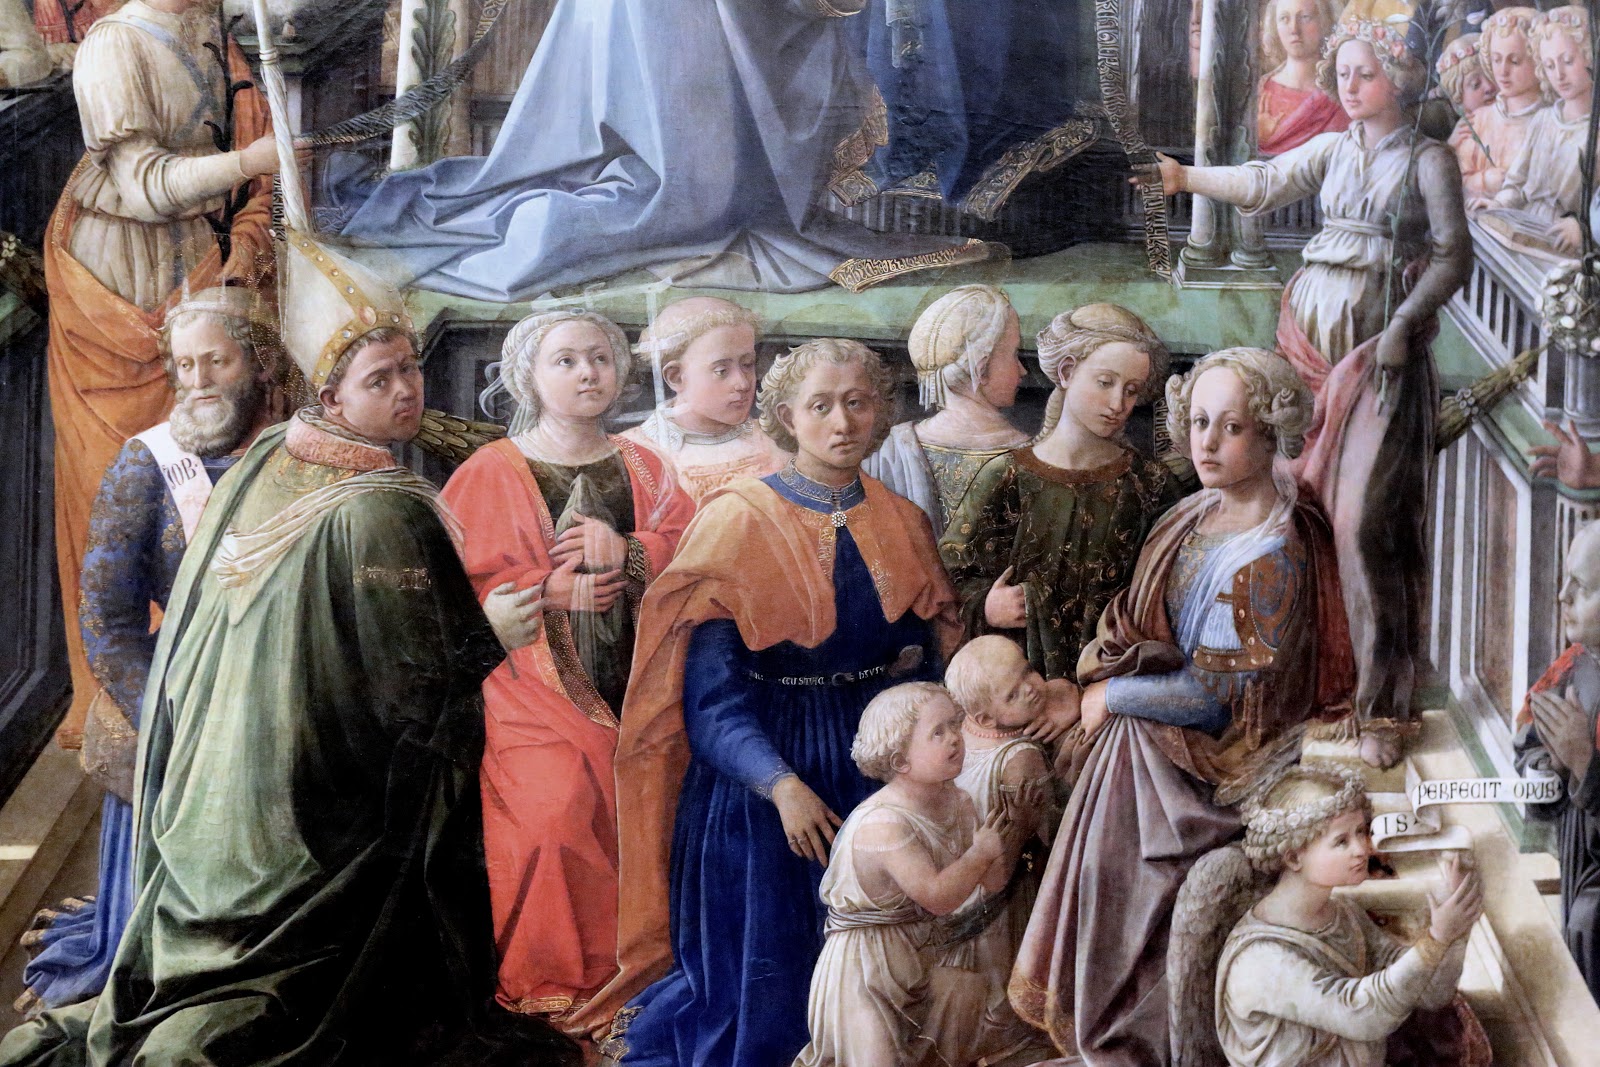 Filippino+Lippi-1457-1504 (119).jpg